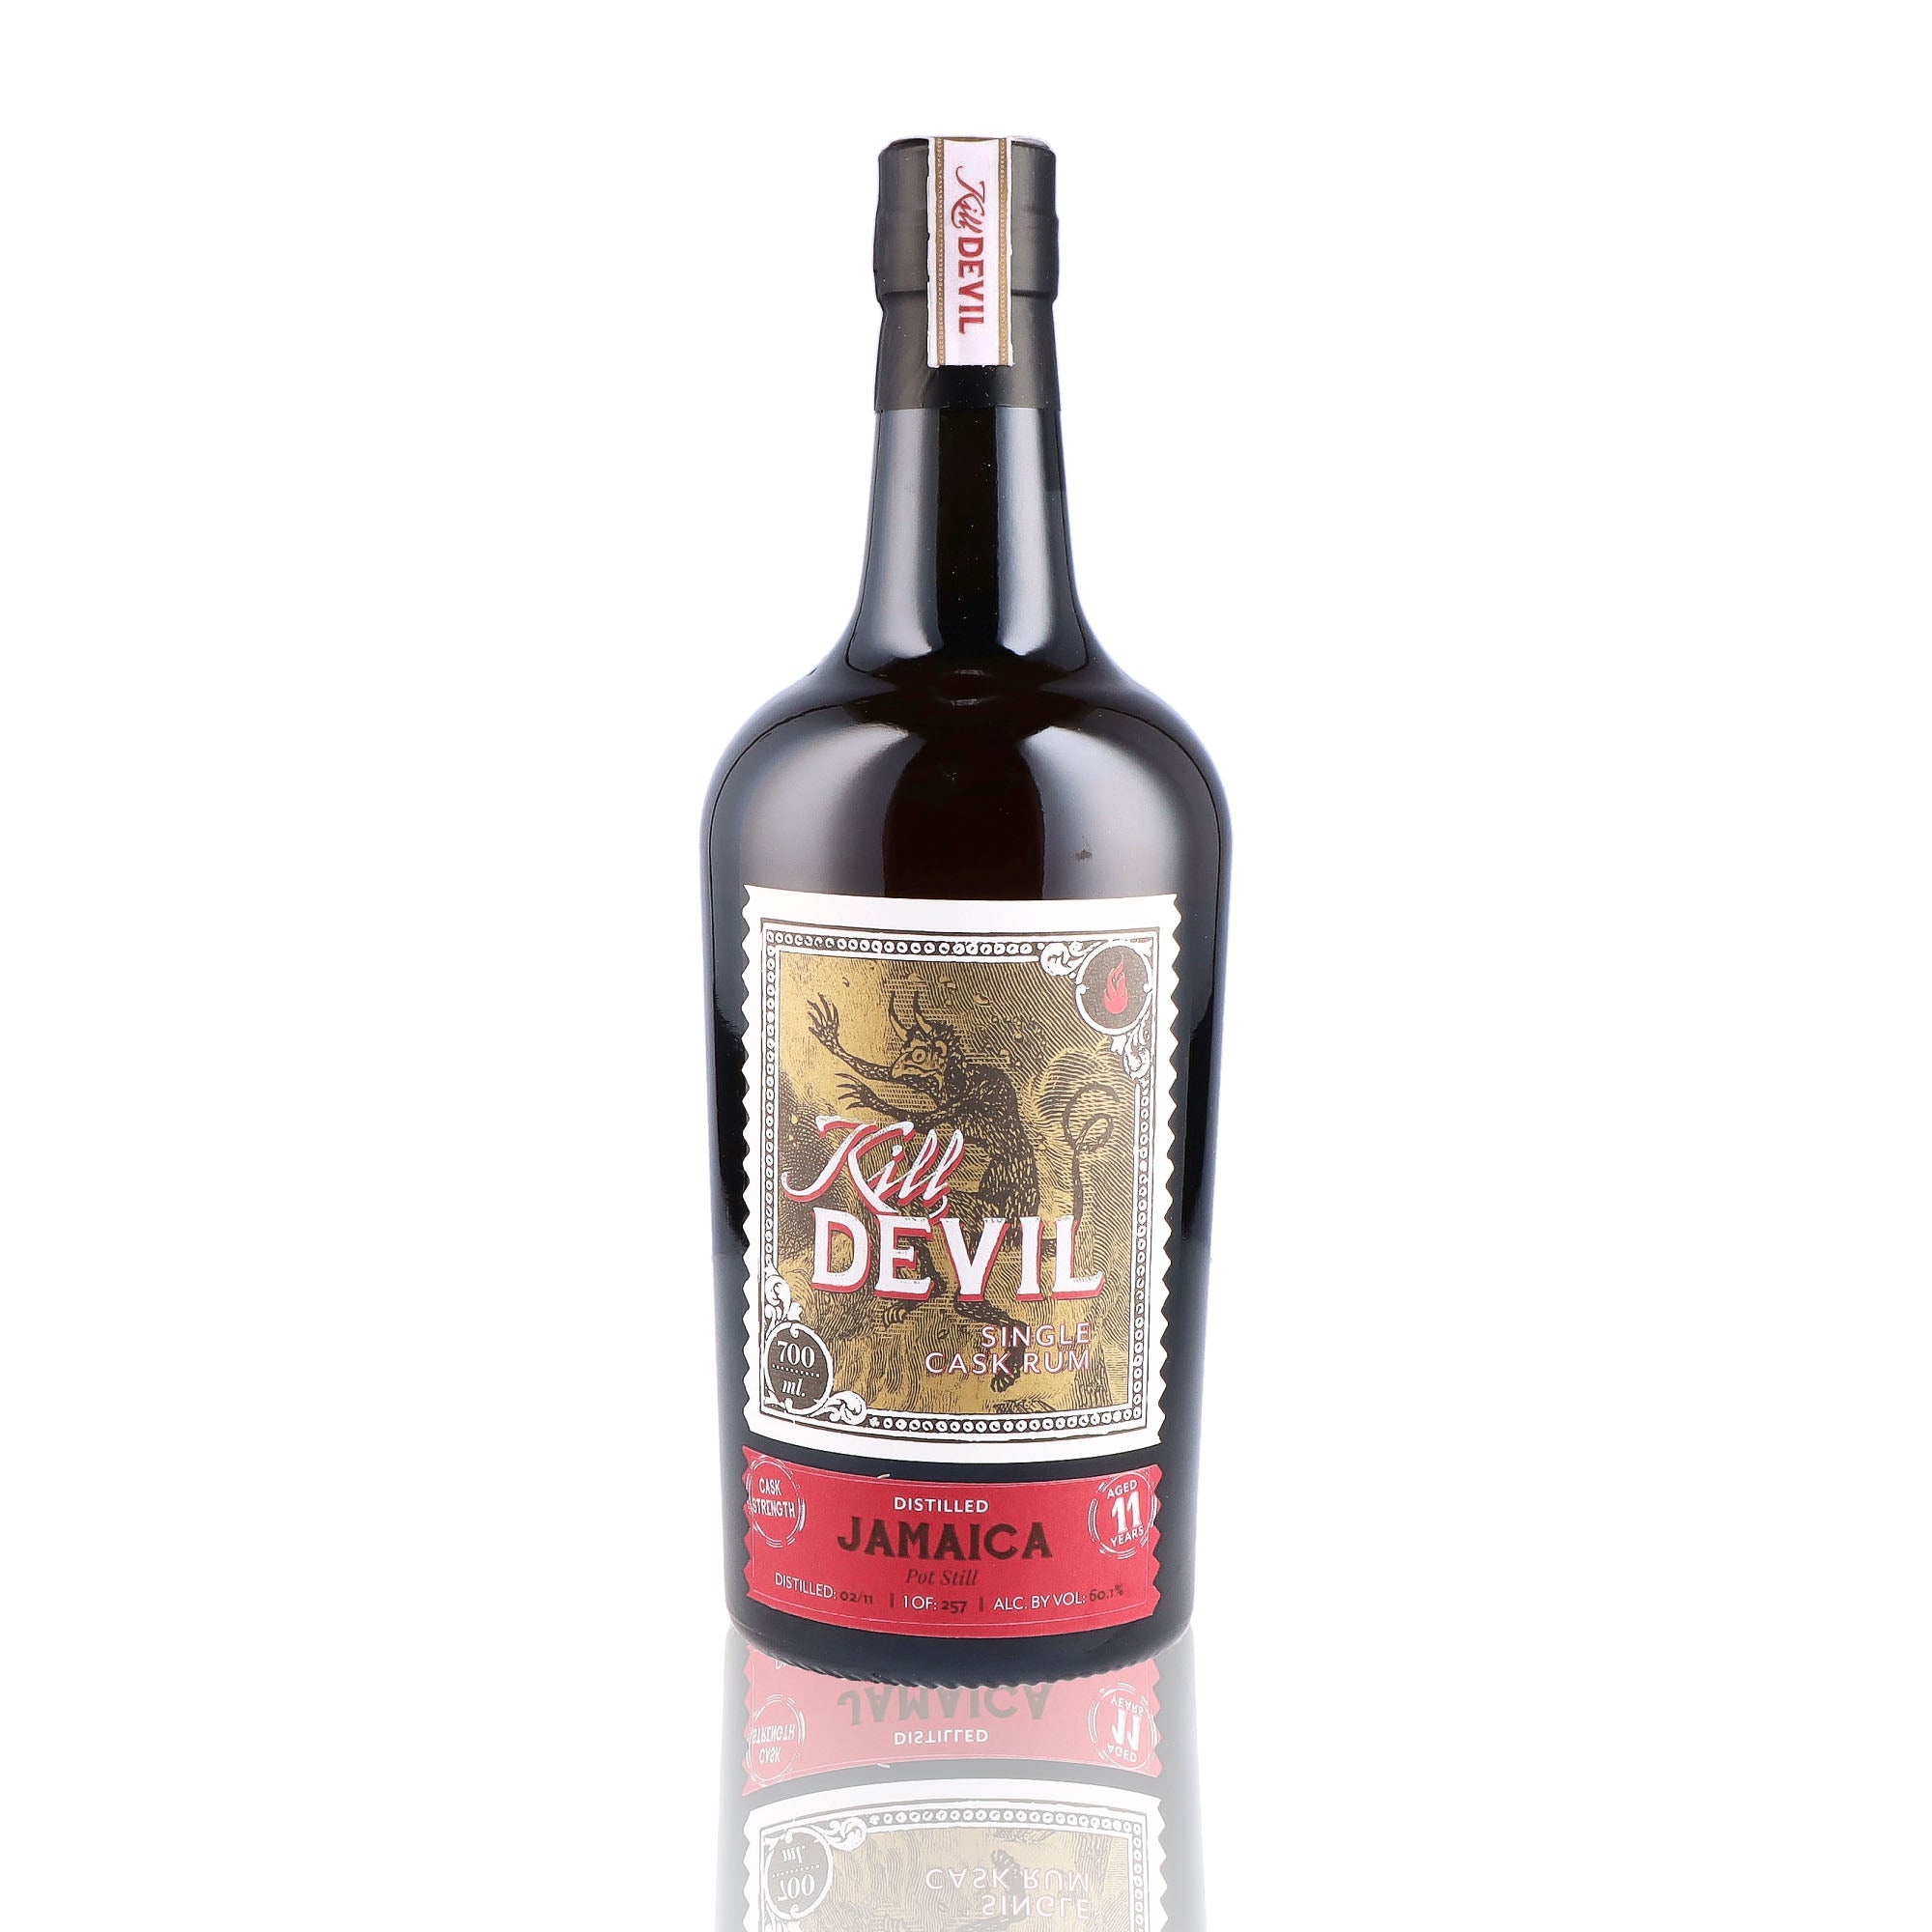 Une bouteille de rhum vieux, de la marque Kill Devil, nommée Jamaica 11 ans Pot Still Single Cask.